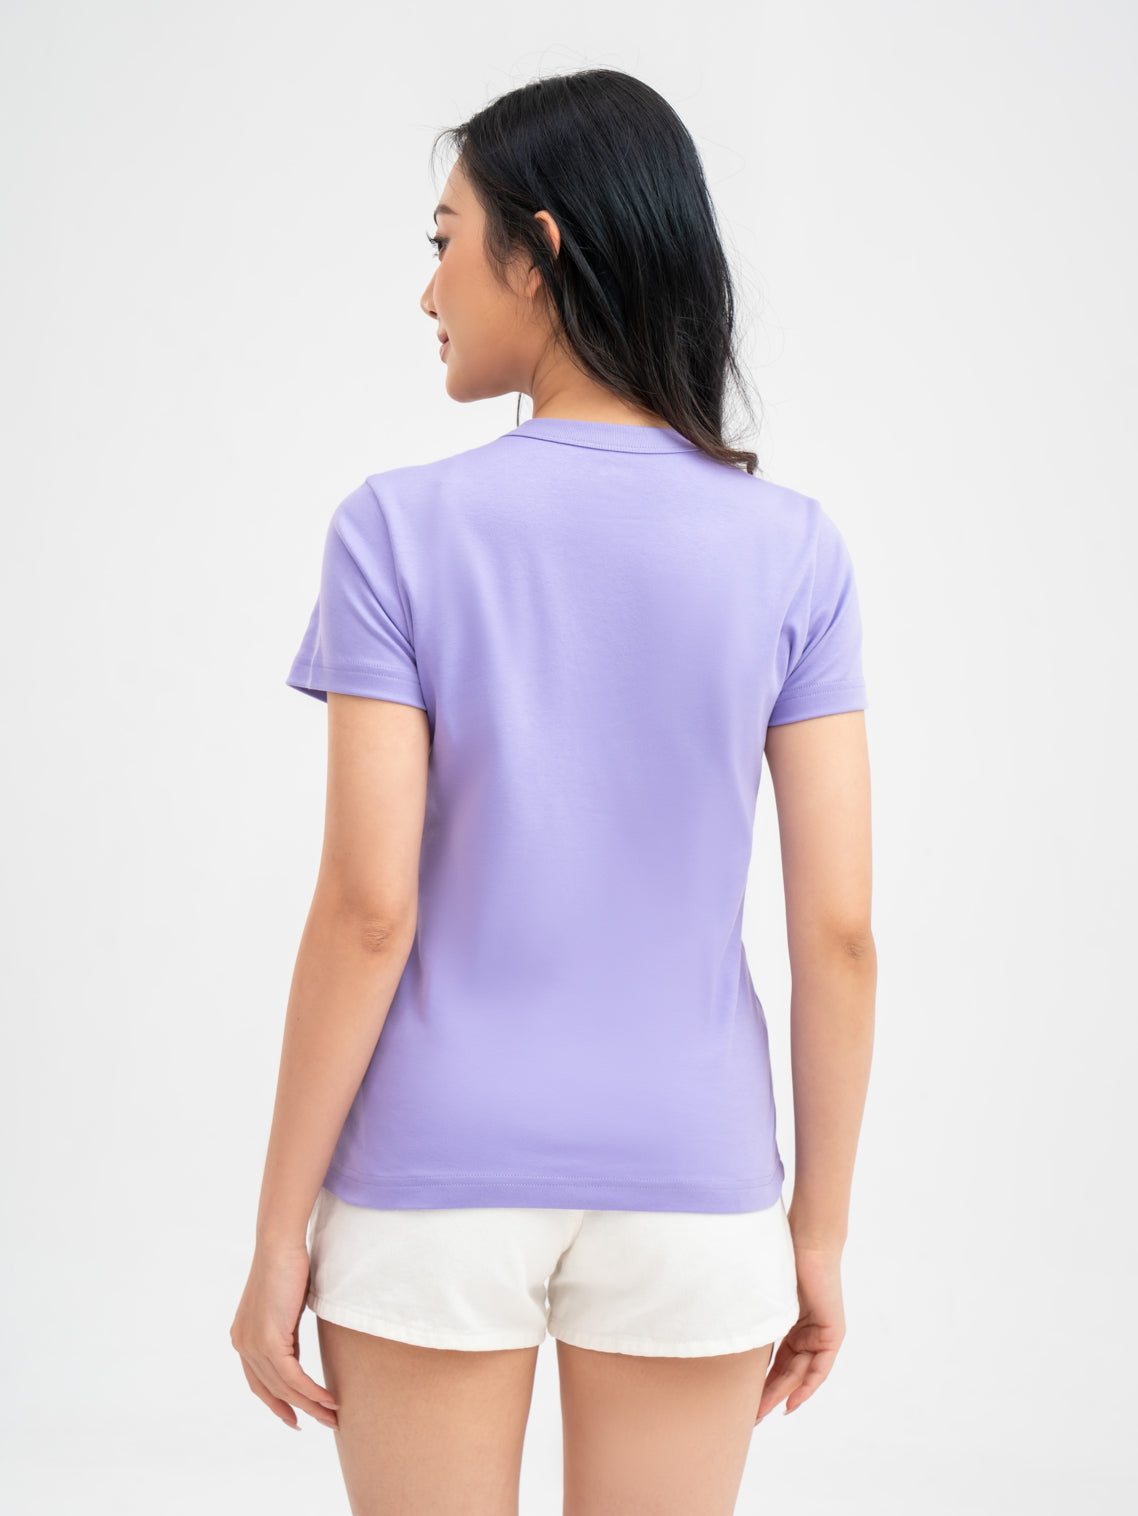 เสื้อยืดผู้หญิงผ้าคอตตอน YODY มีหน้าผ้า2 ด้านที่นุ่มเป็นพิเศษ ใส่ดูมีพลัง TSN6262